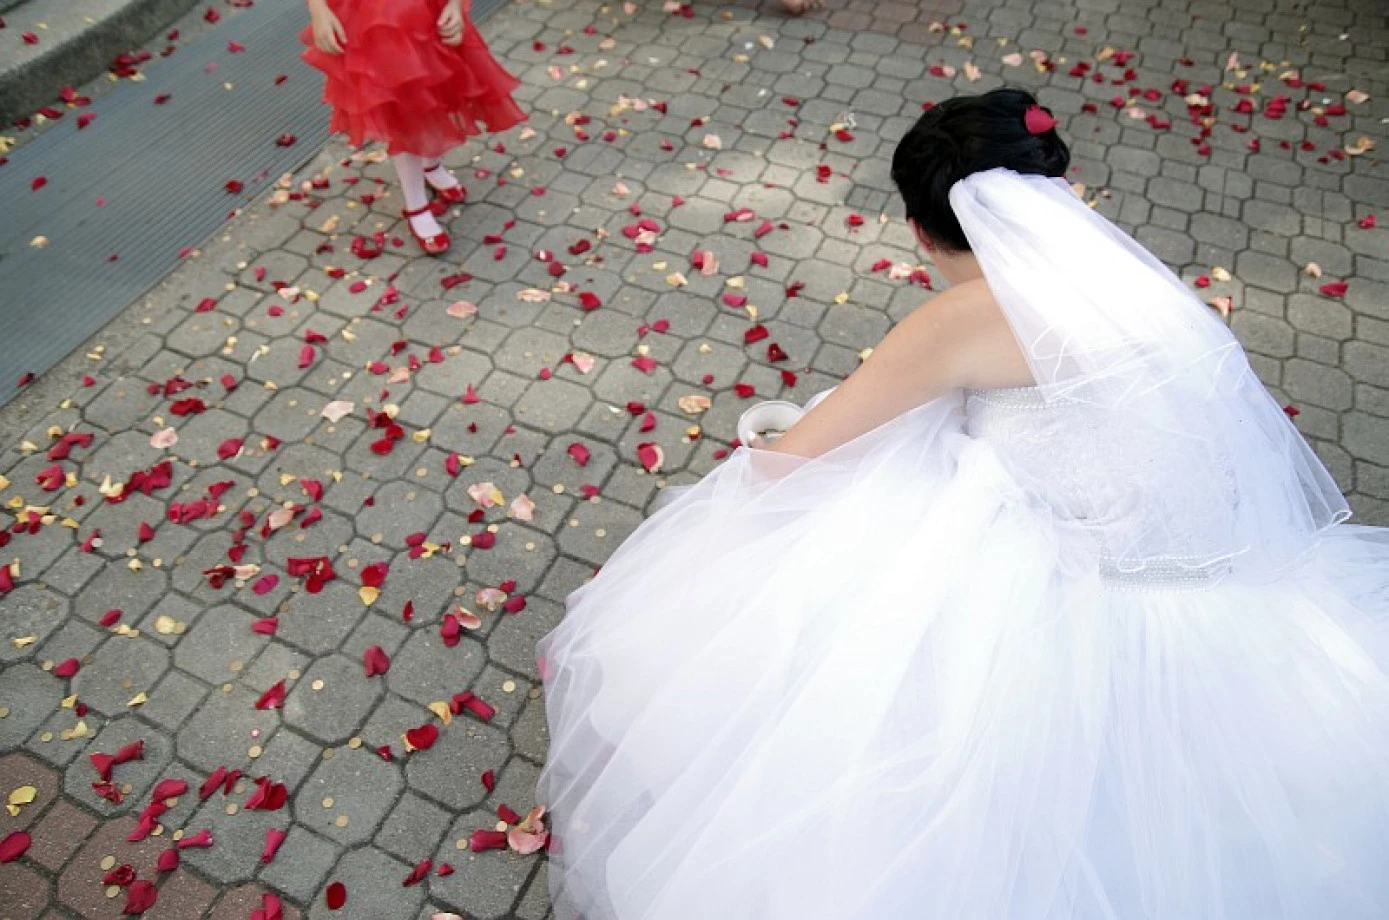 fotograf bydgoszcz foto-wideo-klip portfolio zdjecia slubne inspiracje wesele plener slubny sesja slubna